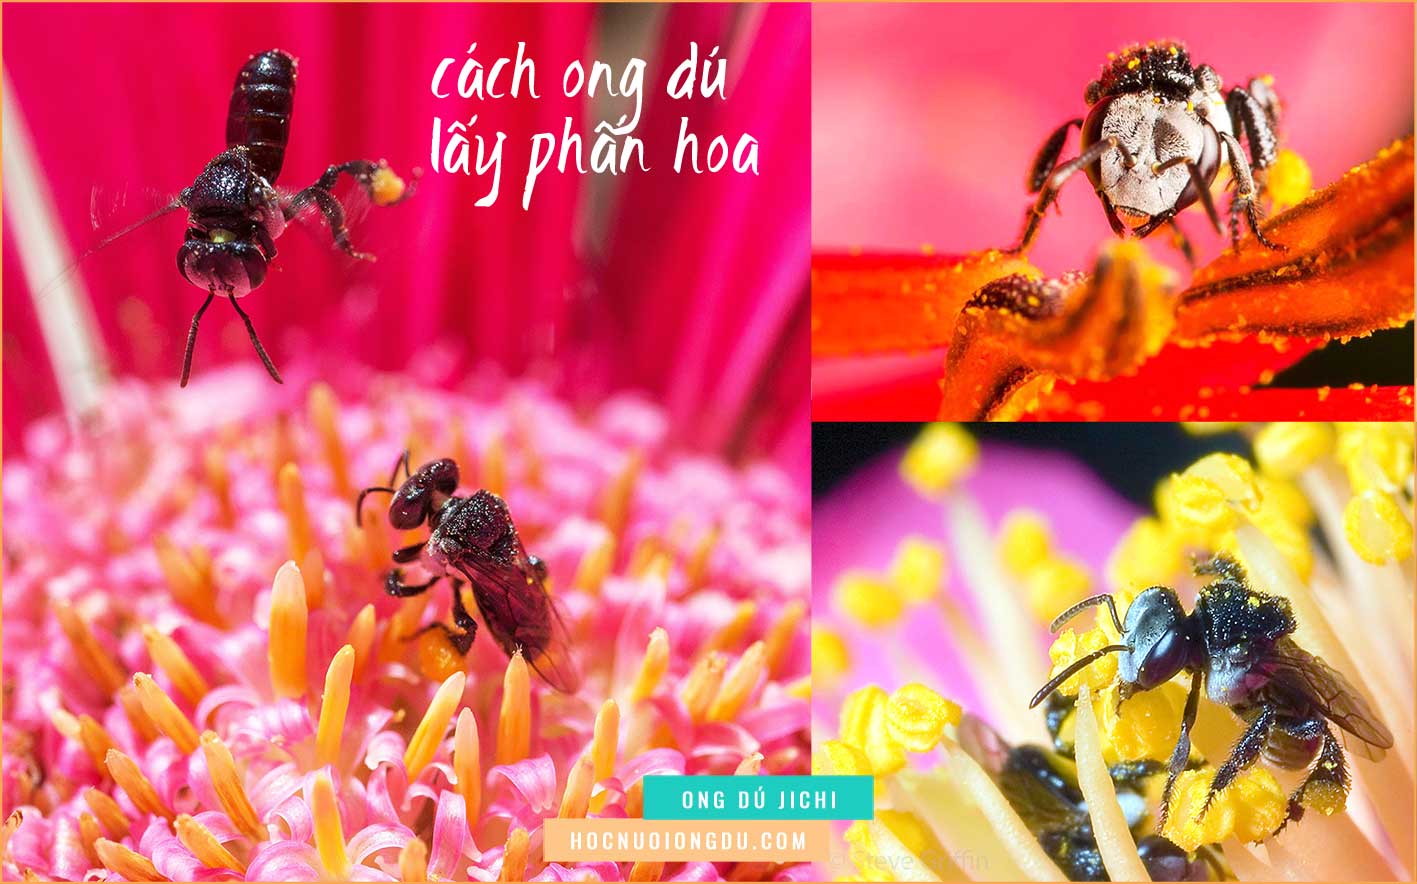 Ong dú ăn phấn hoa, tài liệu nuôi ong dú